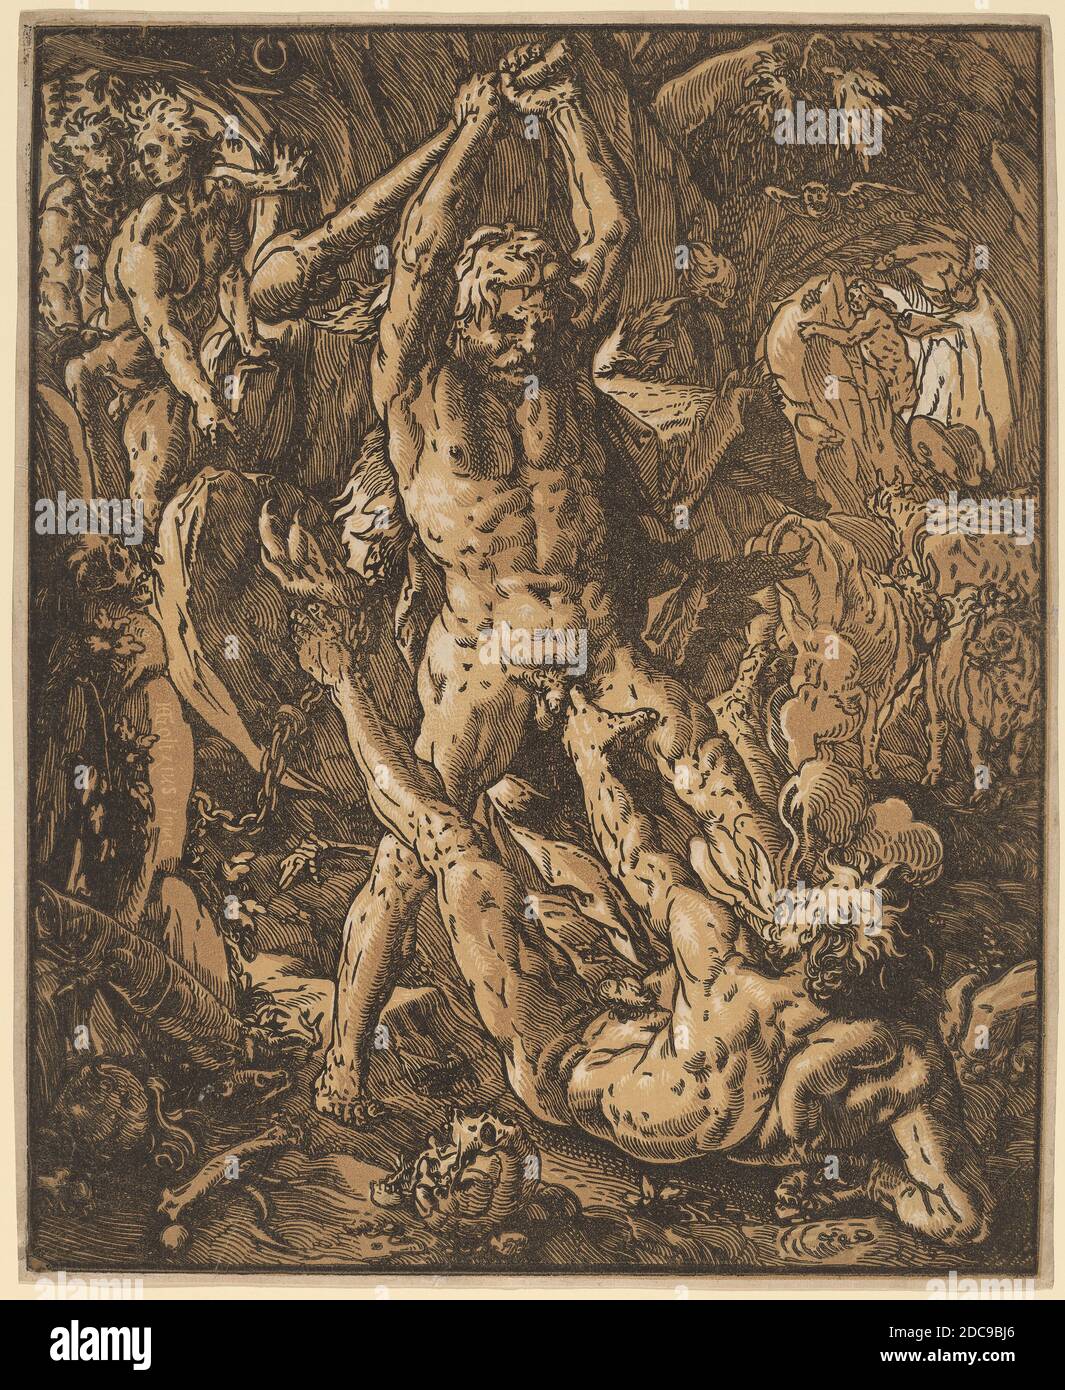 Hendrick Goltzius, (Künstler), Niederländisch, 1558 - 1617, Hercules Killing Cacus, 1588, Chiaroscuro-Holzschnitt in zwei Schattierungen von Sepia und Schwarz Stockfoto